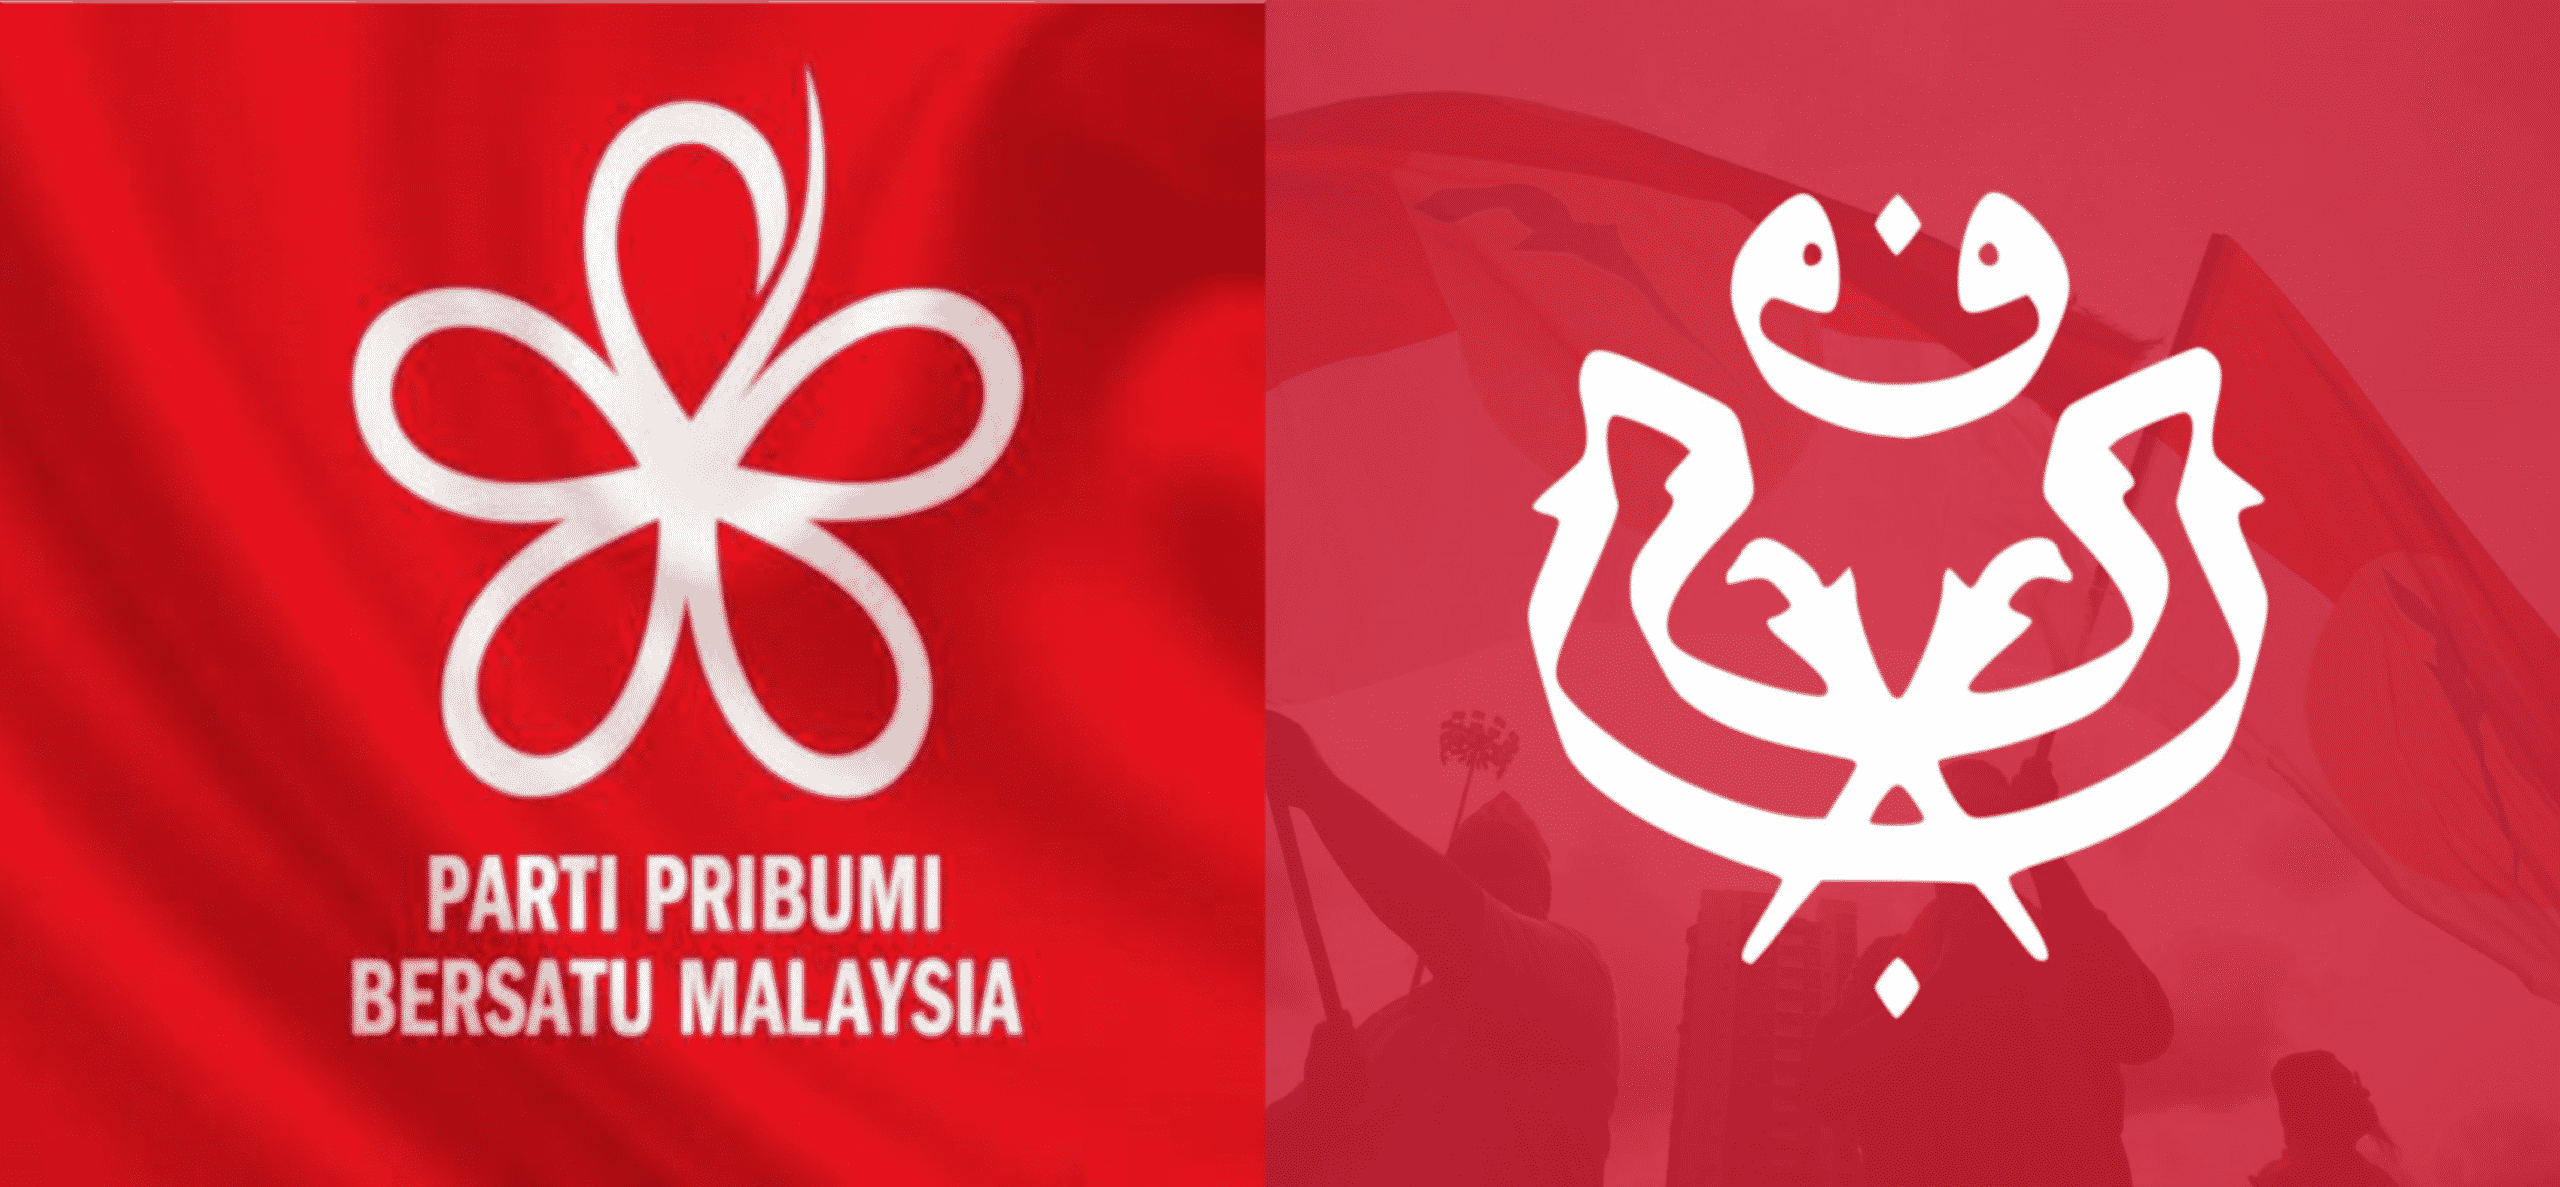 6 Menteri Umno “ugut” letak jawatan jika Bersatu terus memperkecilkan Umno